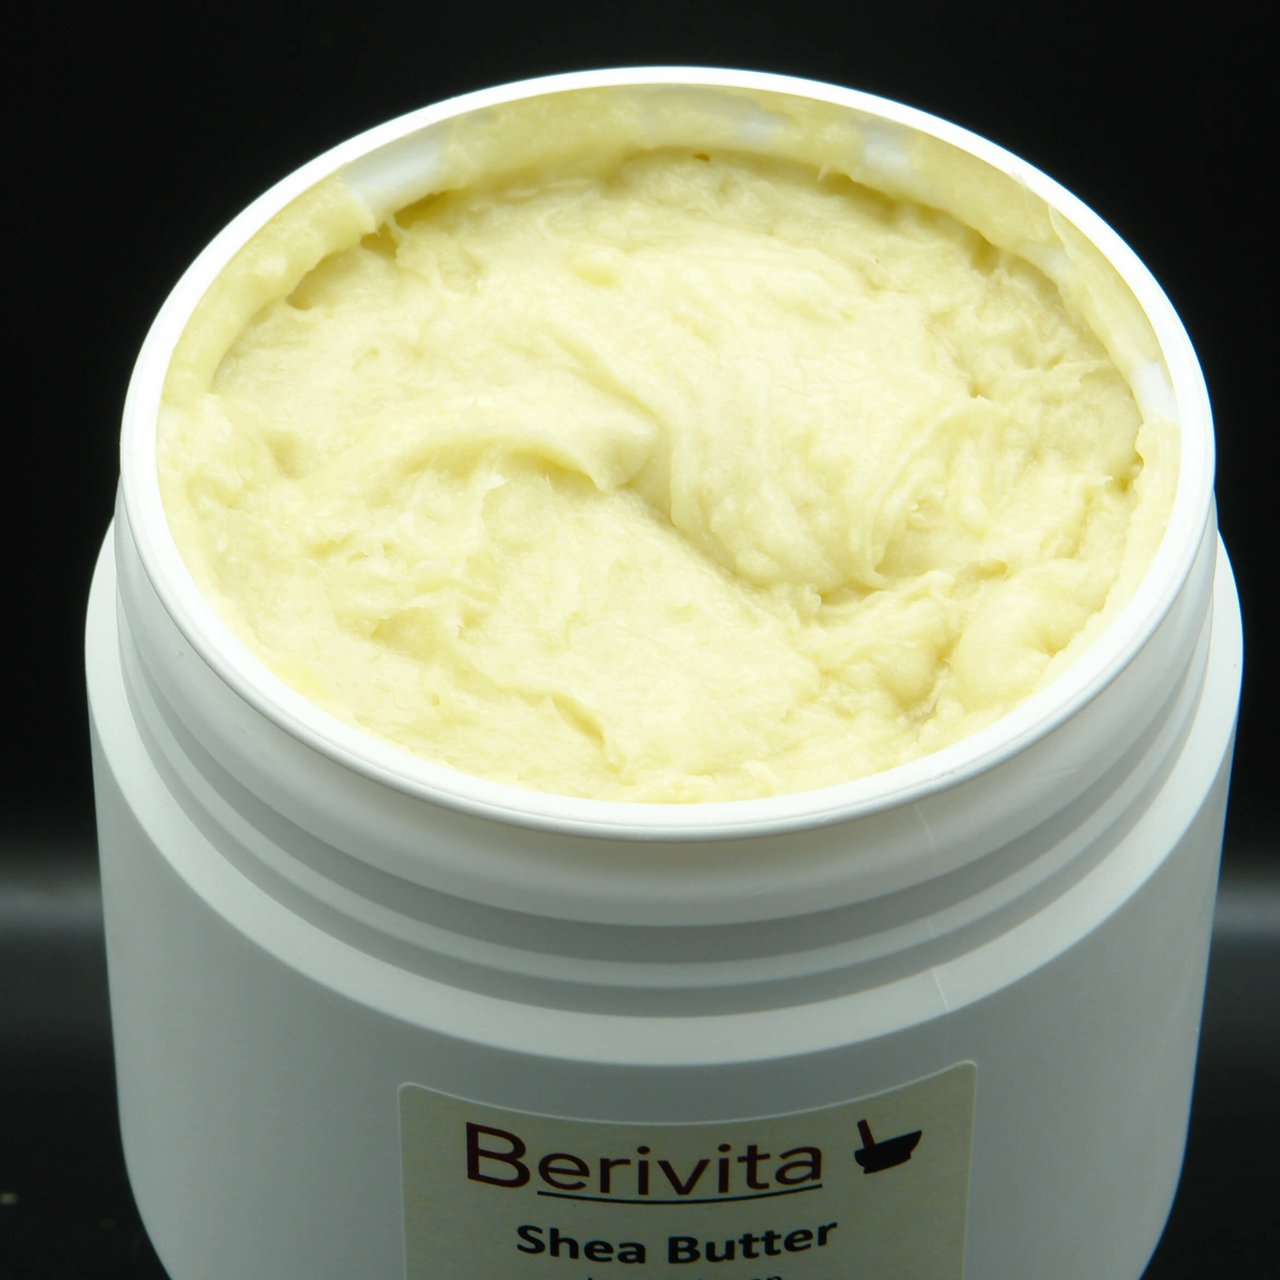 Afgrond Wijden Regulatie 500ml Raw, Onbewerkte Shea Butter 100% PUUR. Ideale natuurlijke Huid- en  Haar butter - BeriVita.com - Natuurlijk & Puur